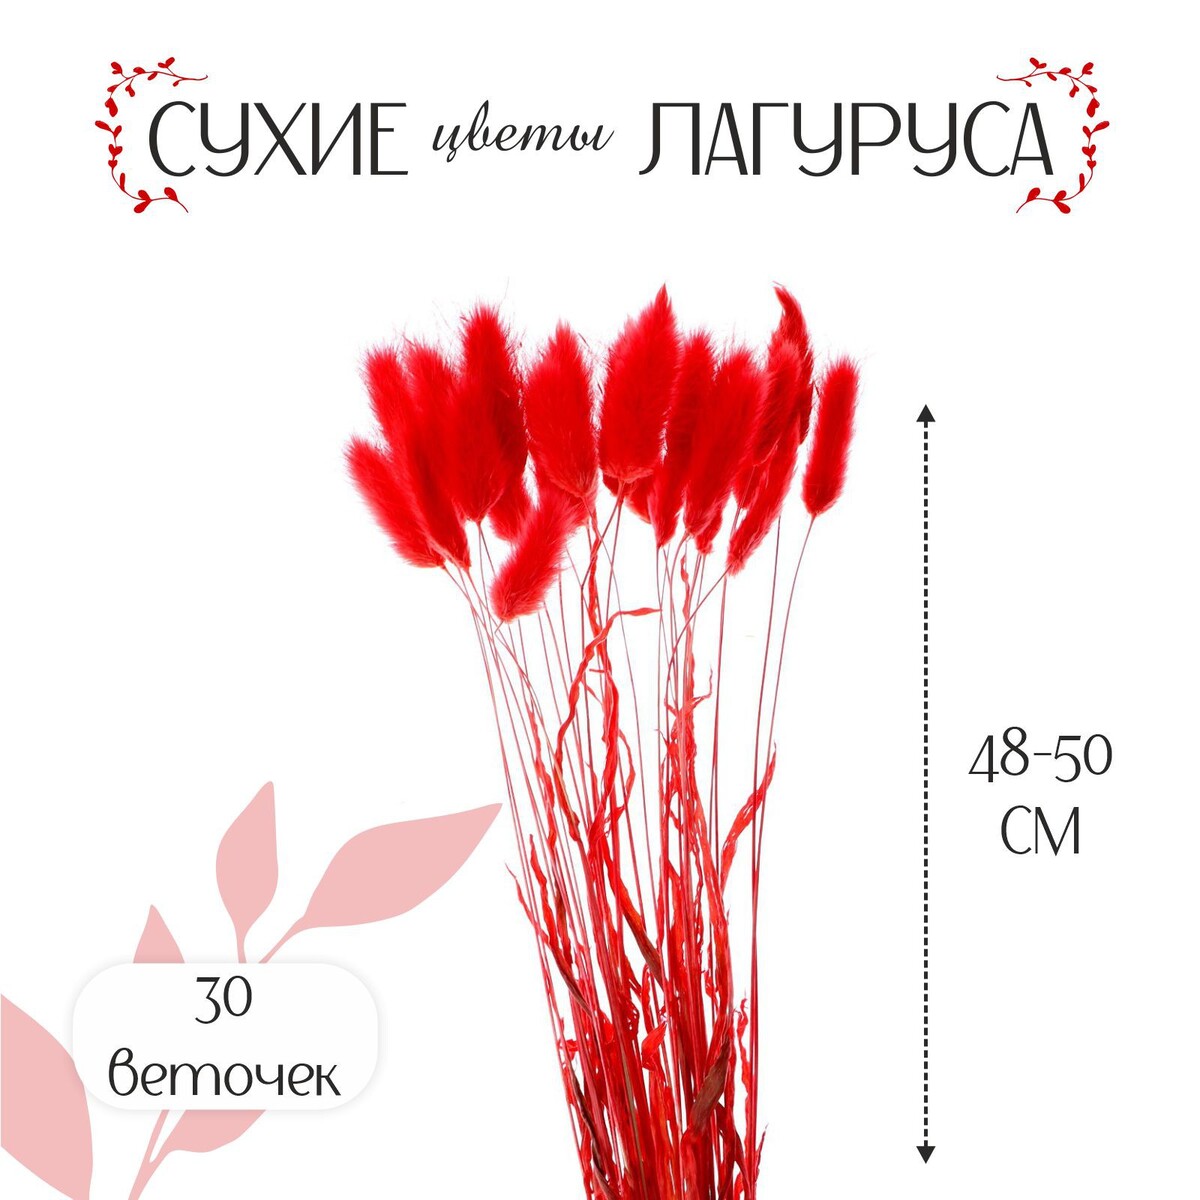 Сухие цветы лагуруса, набор 30 шт., цвет красный сыродельница мини d 12 см внешний d 14 см красный